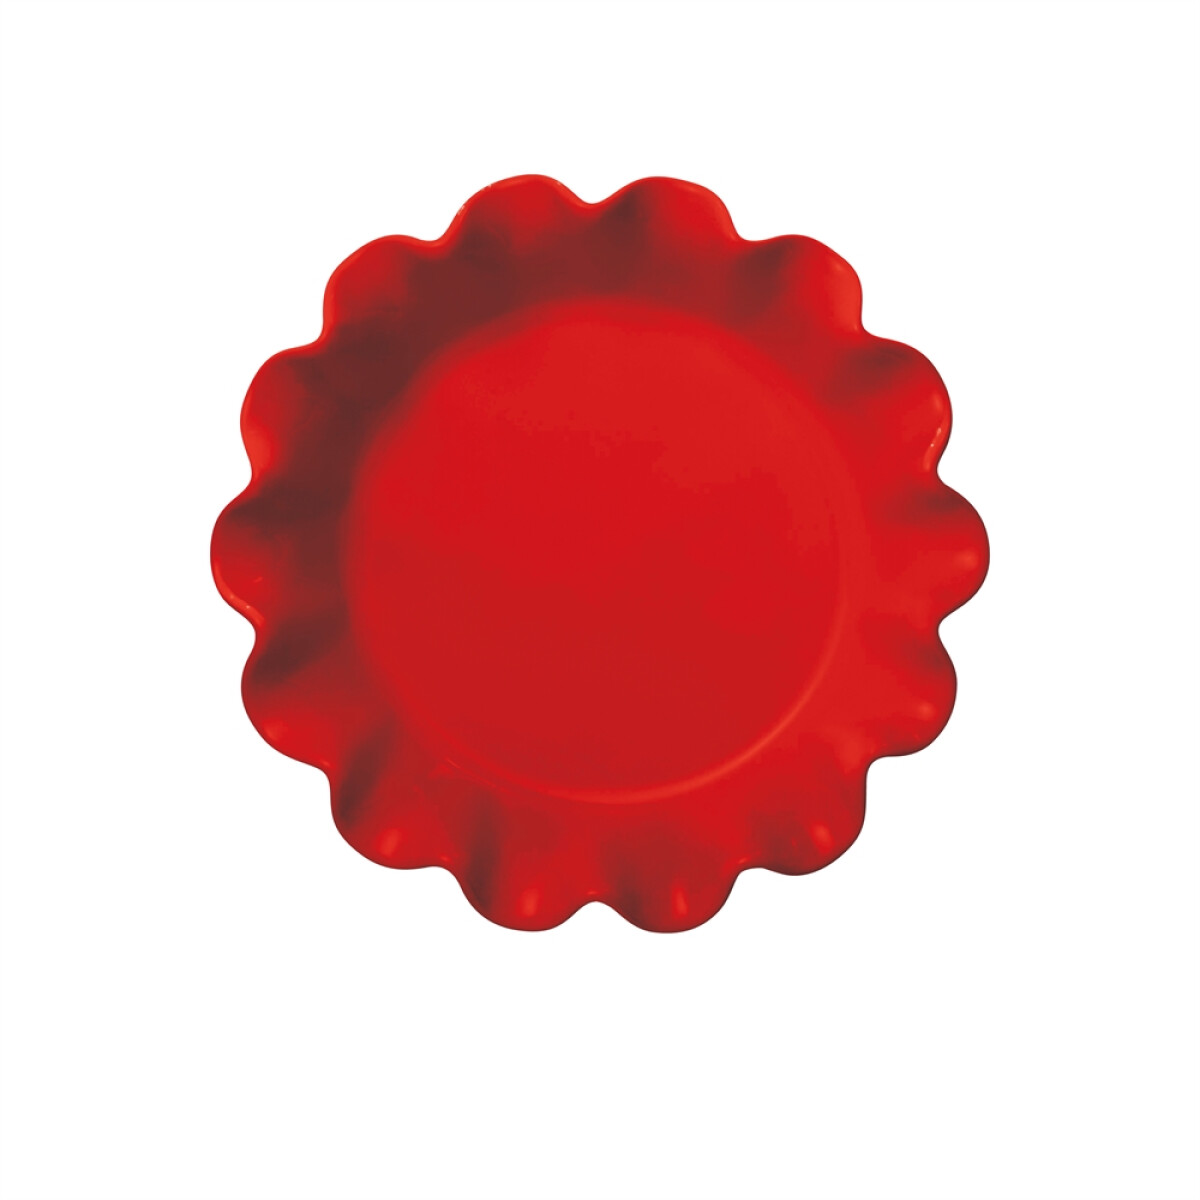 Керамична форма за пай EMILE HENRY RUFFLED PIE DISH - Ø 27 см, цвят червен